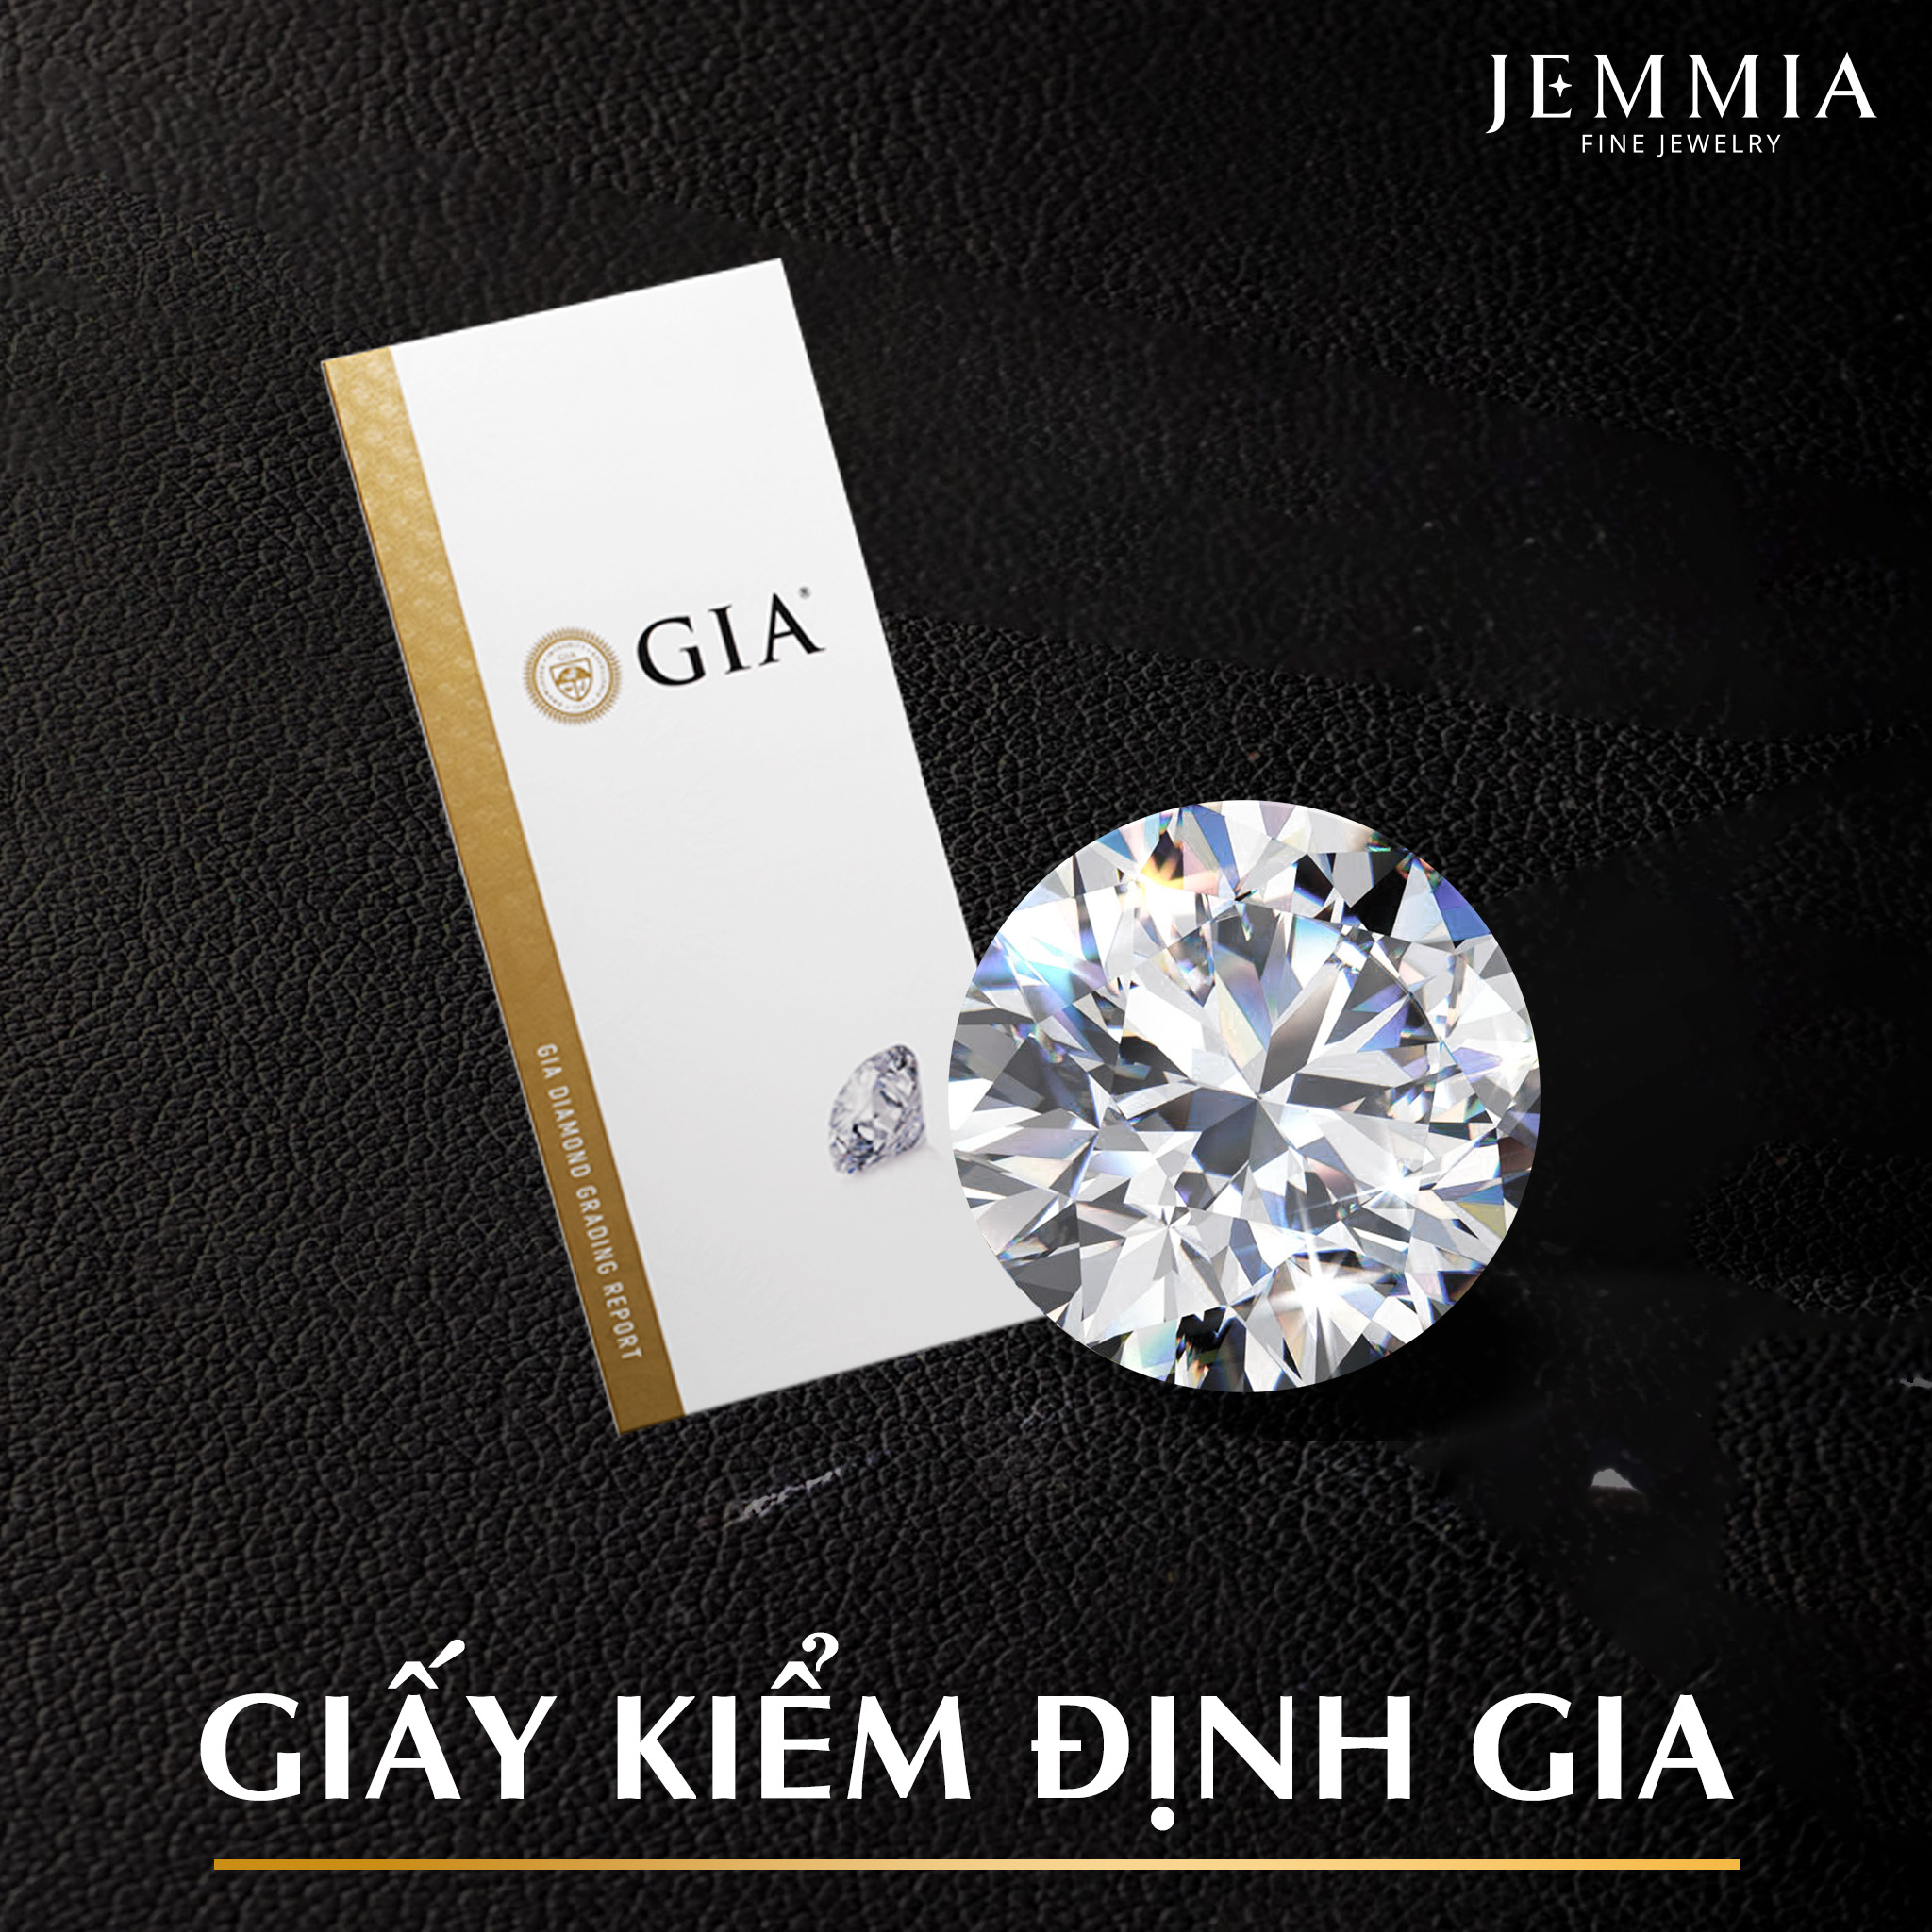 Kim cương khi mua tại Jemmia đều có giấy kiểm định GIA